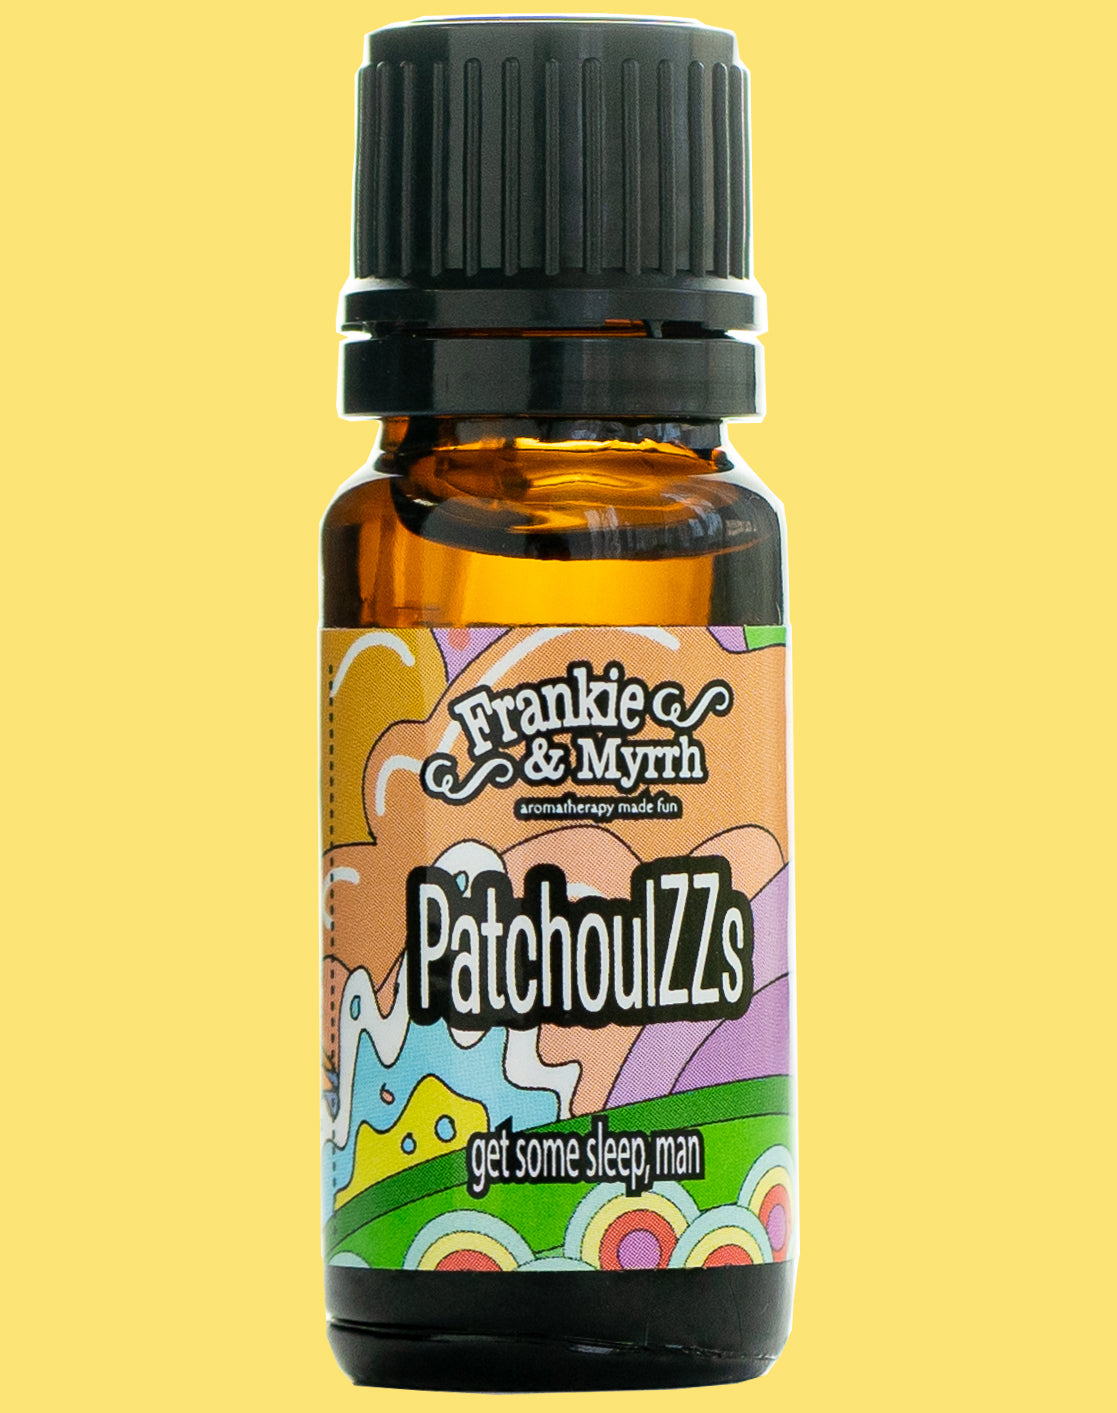 PatchoulZzs | Patchouli & Lavender Essential Oil Blend